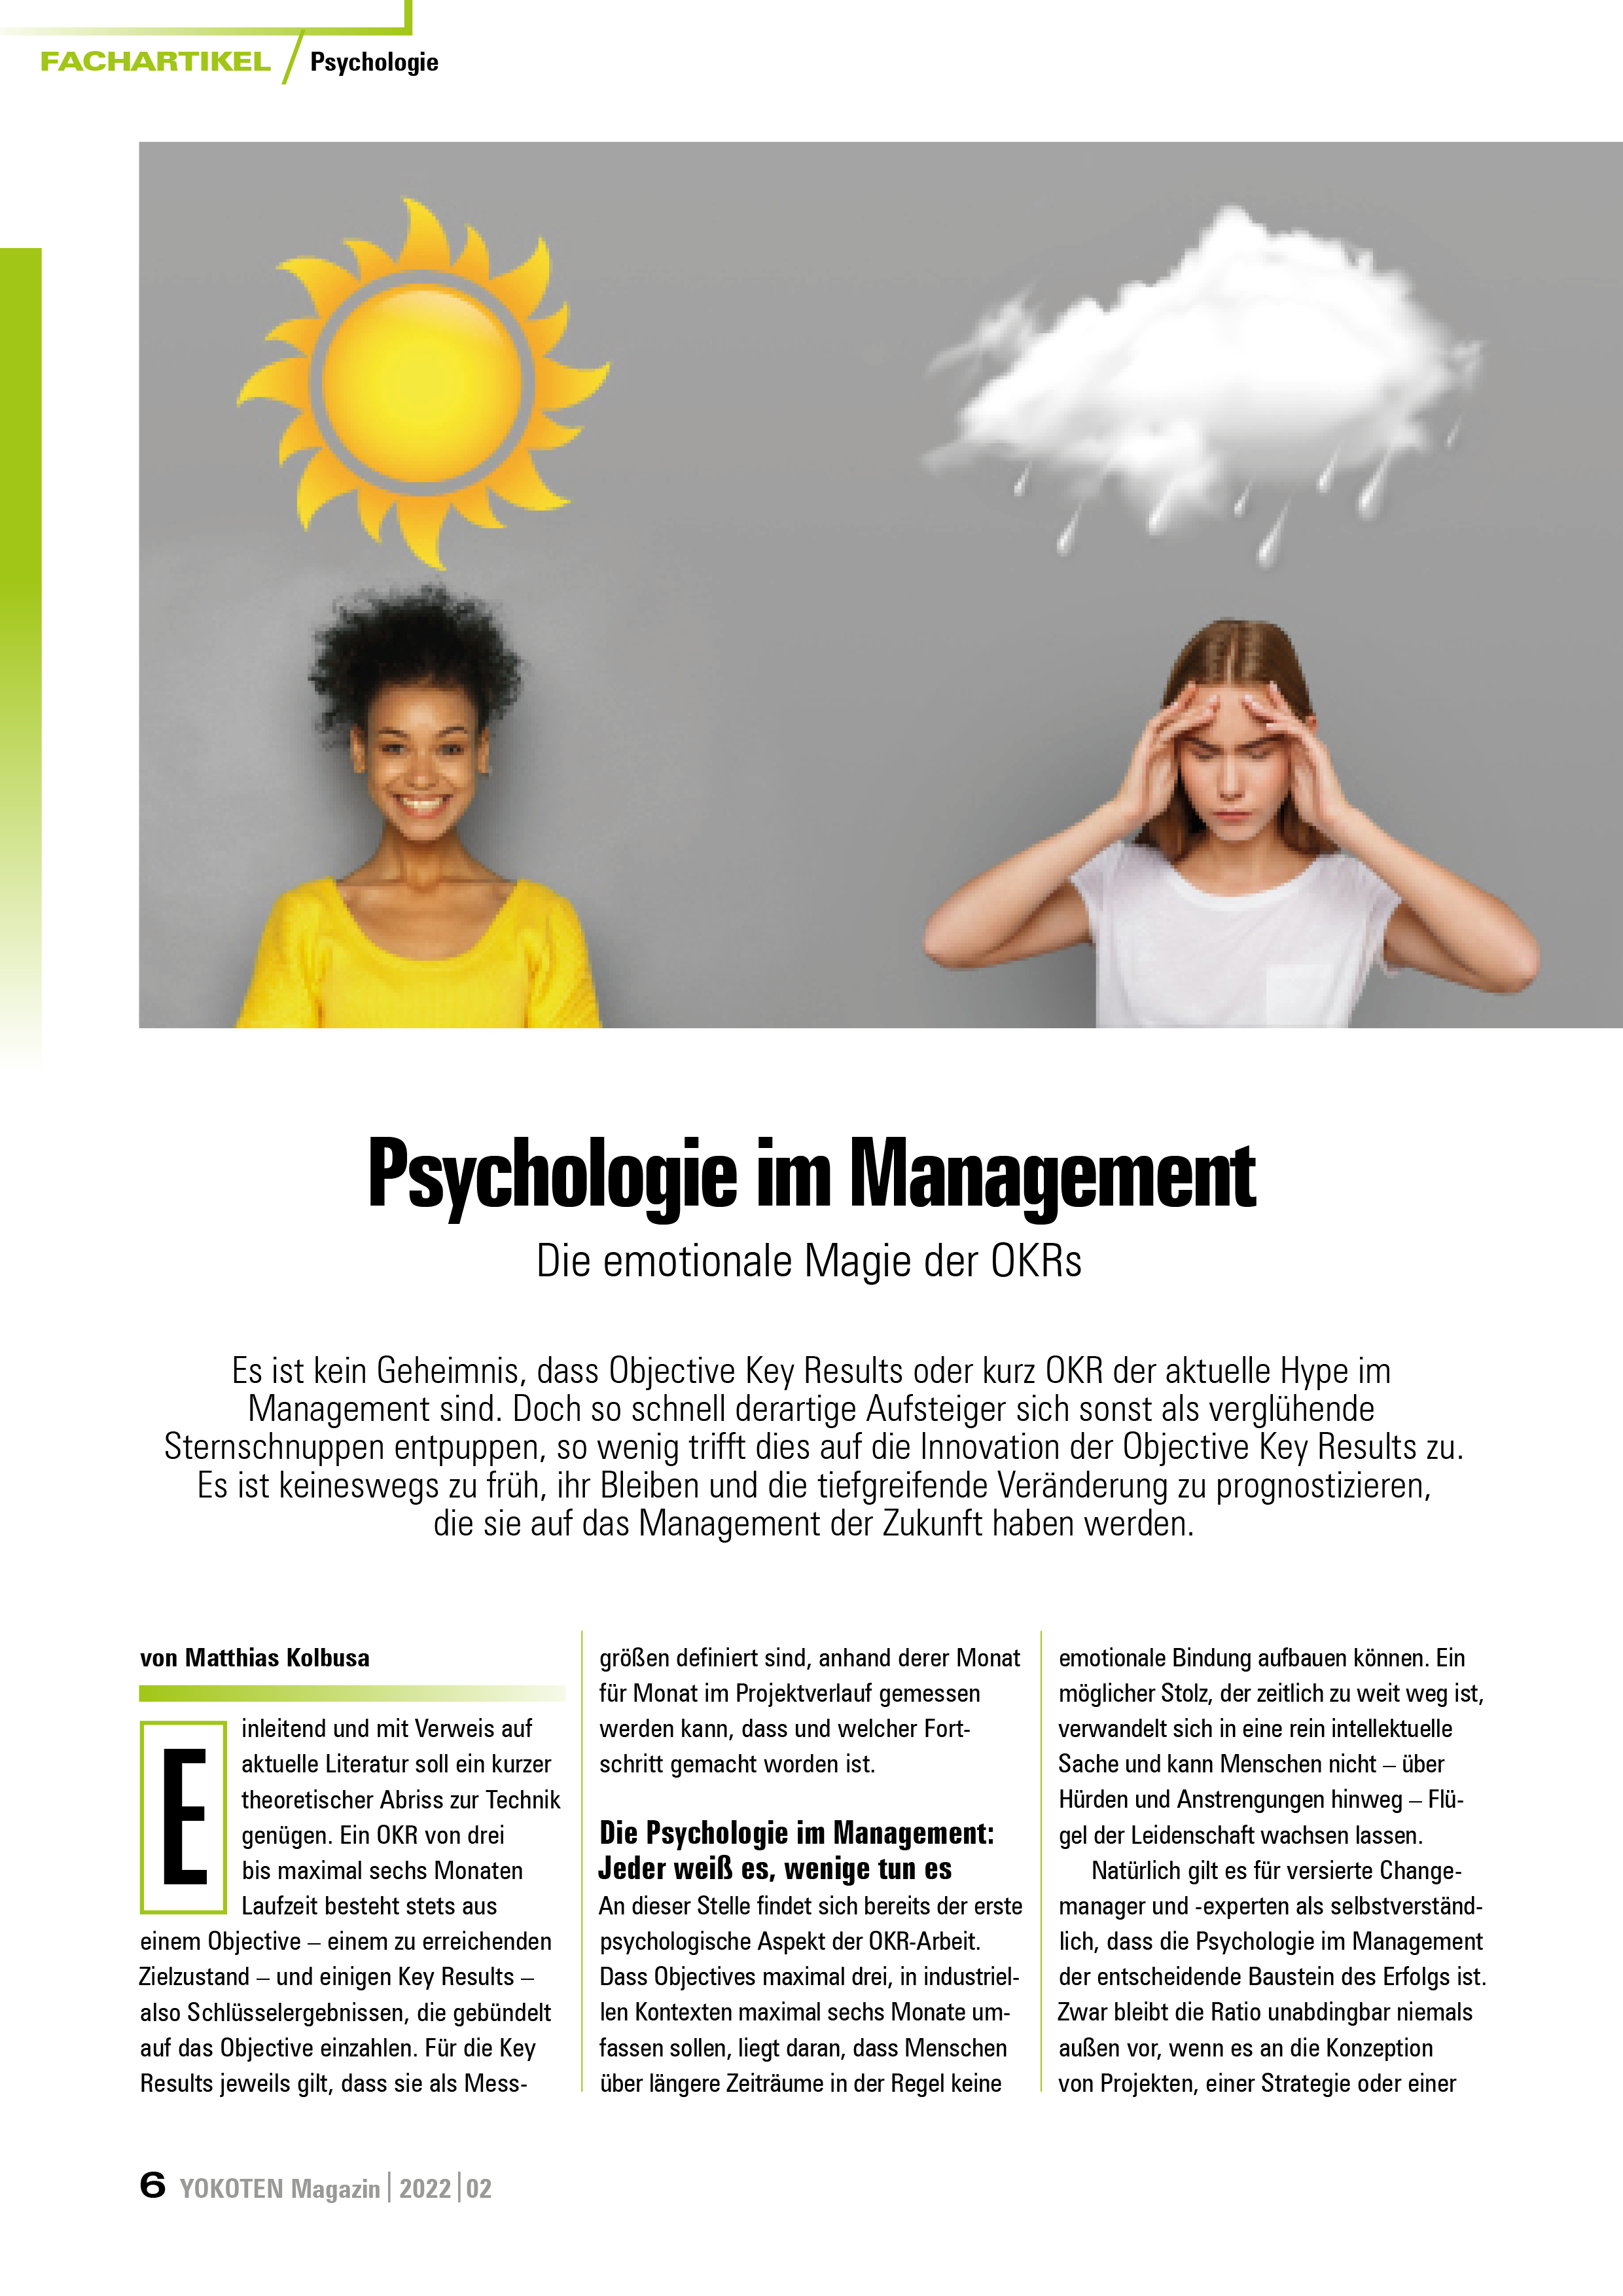 Psychologie im Management - Artikel aus Fachmagazin YOKOTEN 2022-02